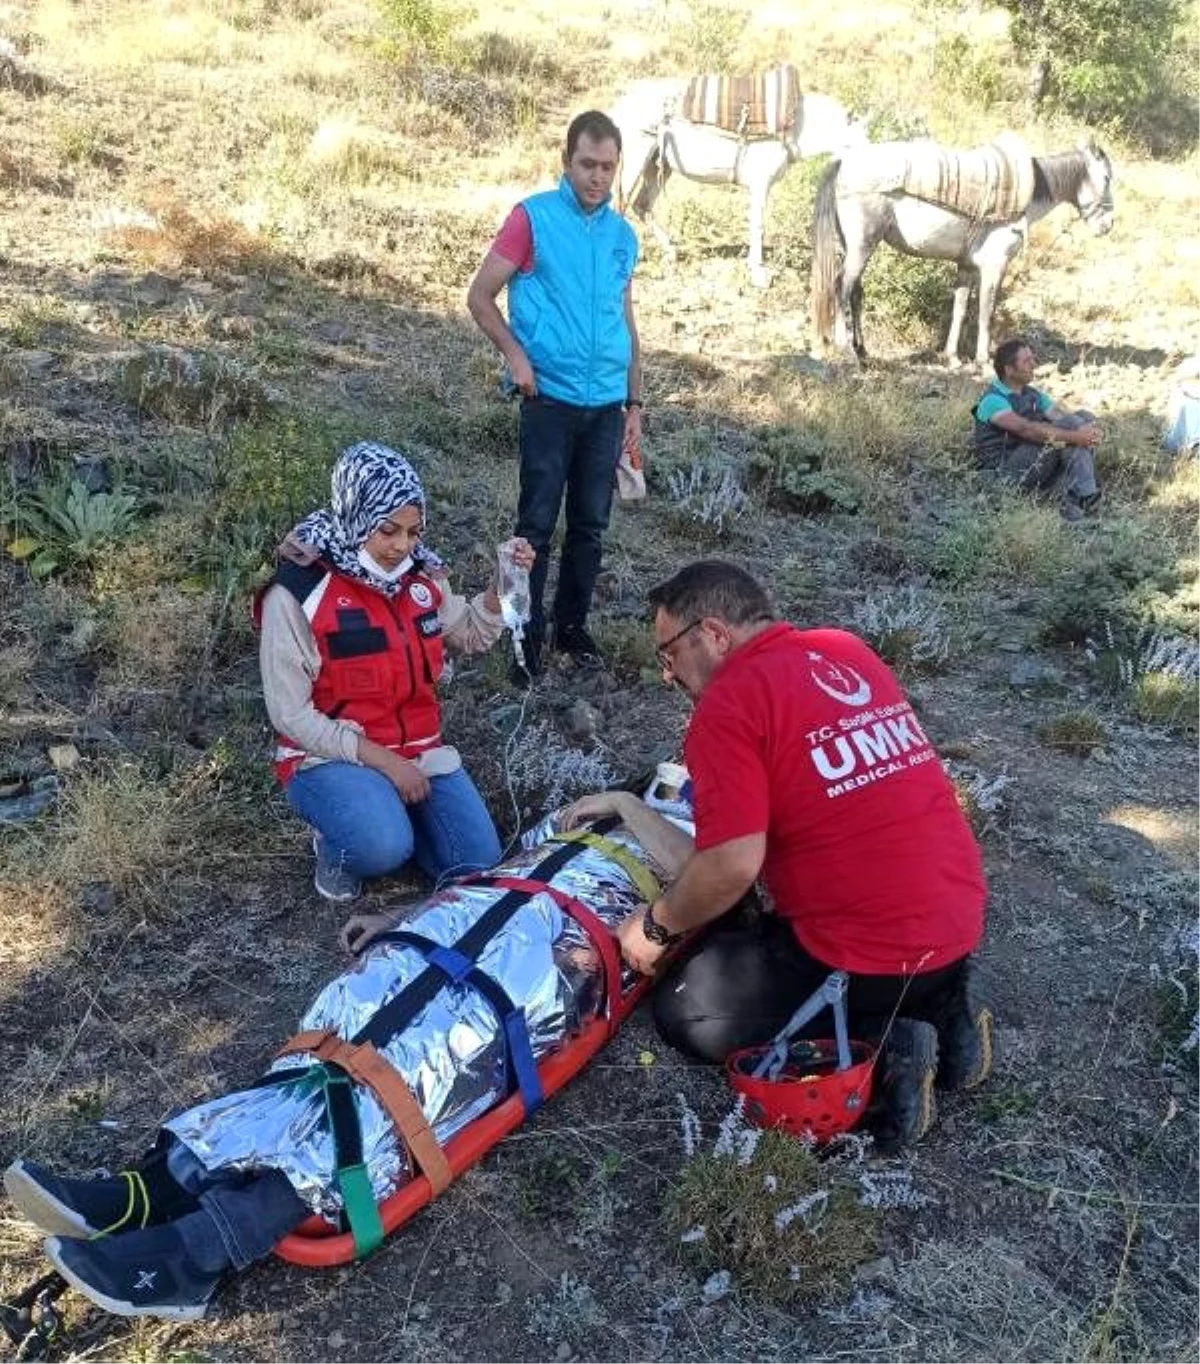 Mera tespitine giden veteriner, attan düşüp yaralandı